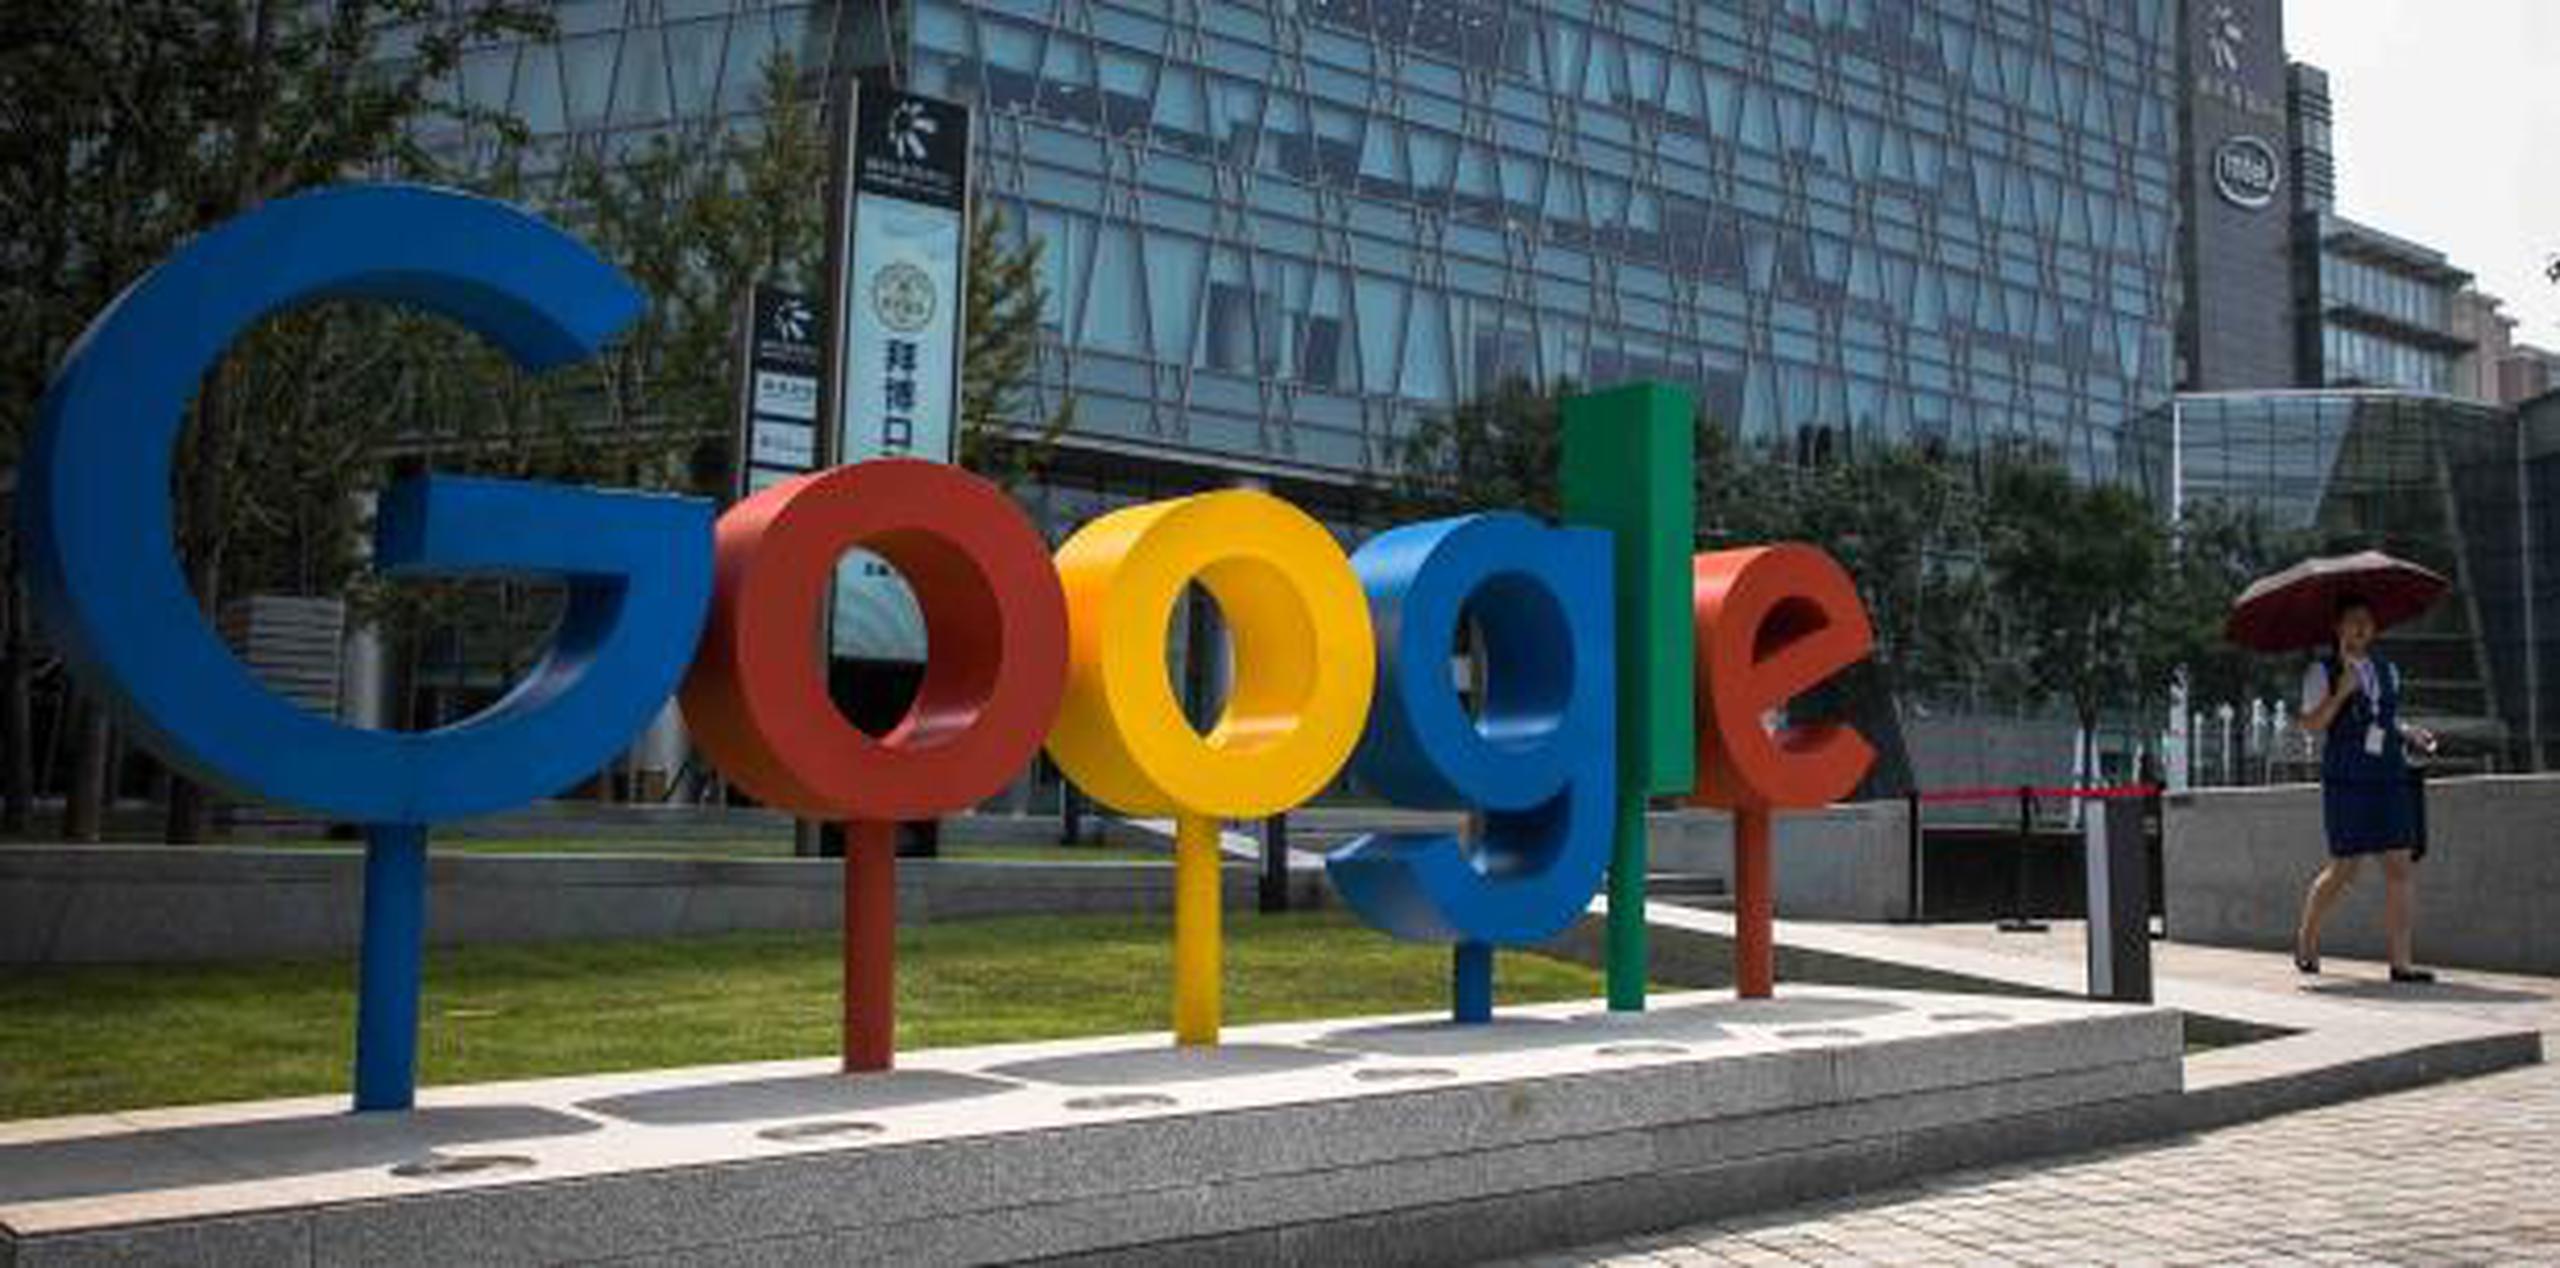 Políticos y analistas antimonopolio han expresado preocupación porque Google controla una tajada demasiado grande del proceso de publicidad digital. (EFE / Roman Pilipey)